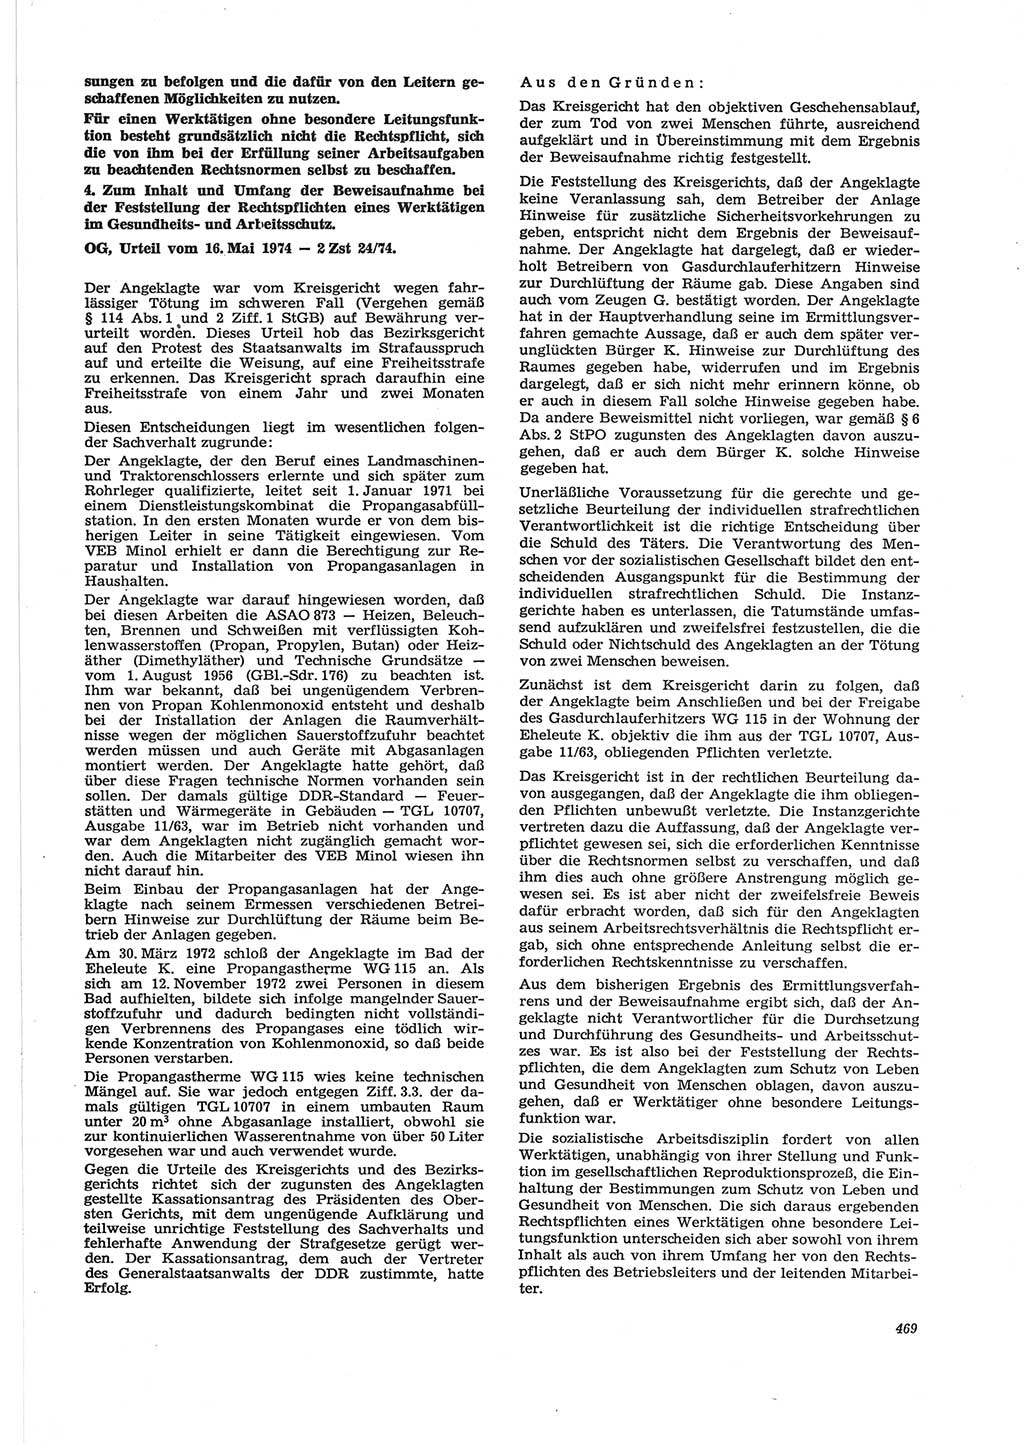 Neue Justiz (NJ), Zeitschrift für Recht und Rechtswissenschaft [Deutsche Demokratische Republik (DDR)], 28. Jahrgang 1974, Seite 469 (NJ DDR 1974, S. 469)